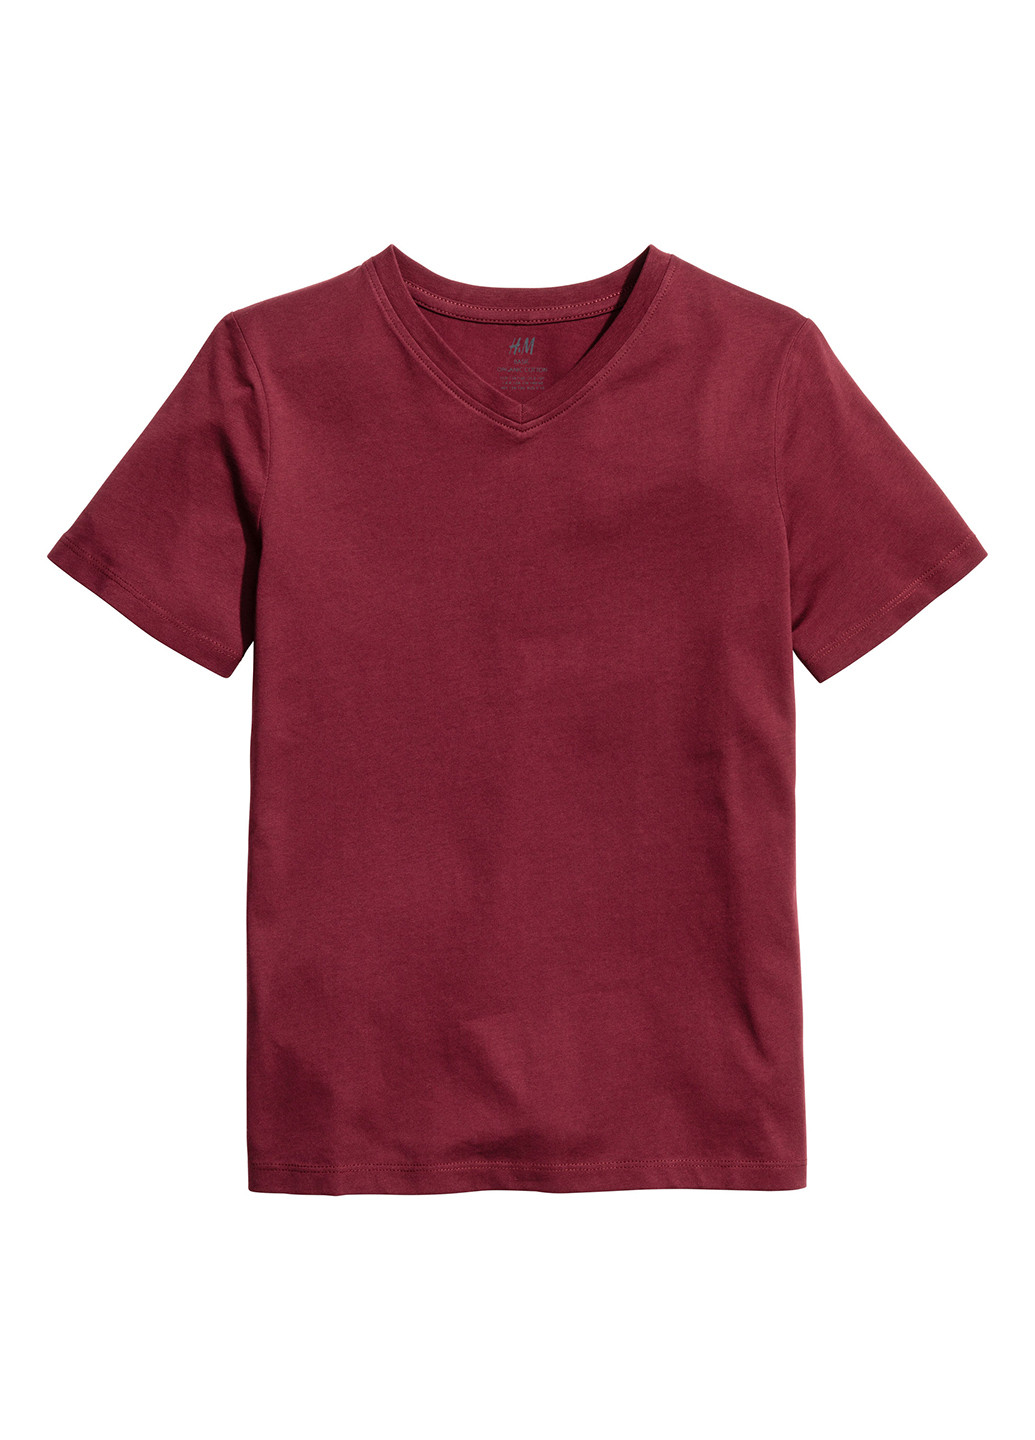 Бордовая летняя футболка с коротким рукавом H&M